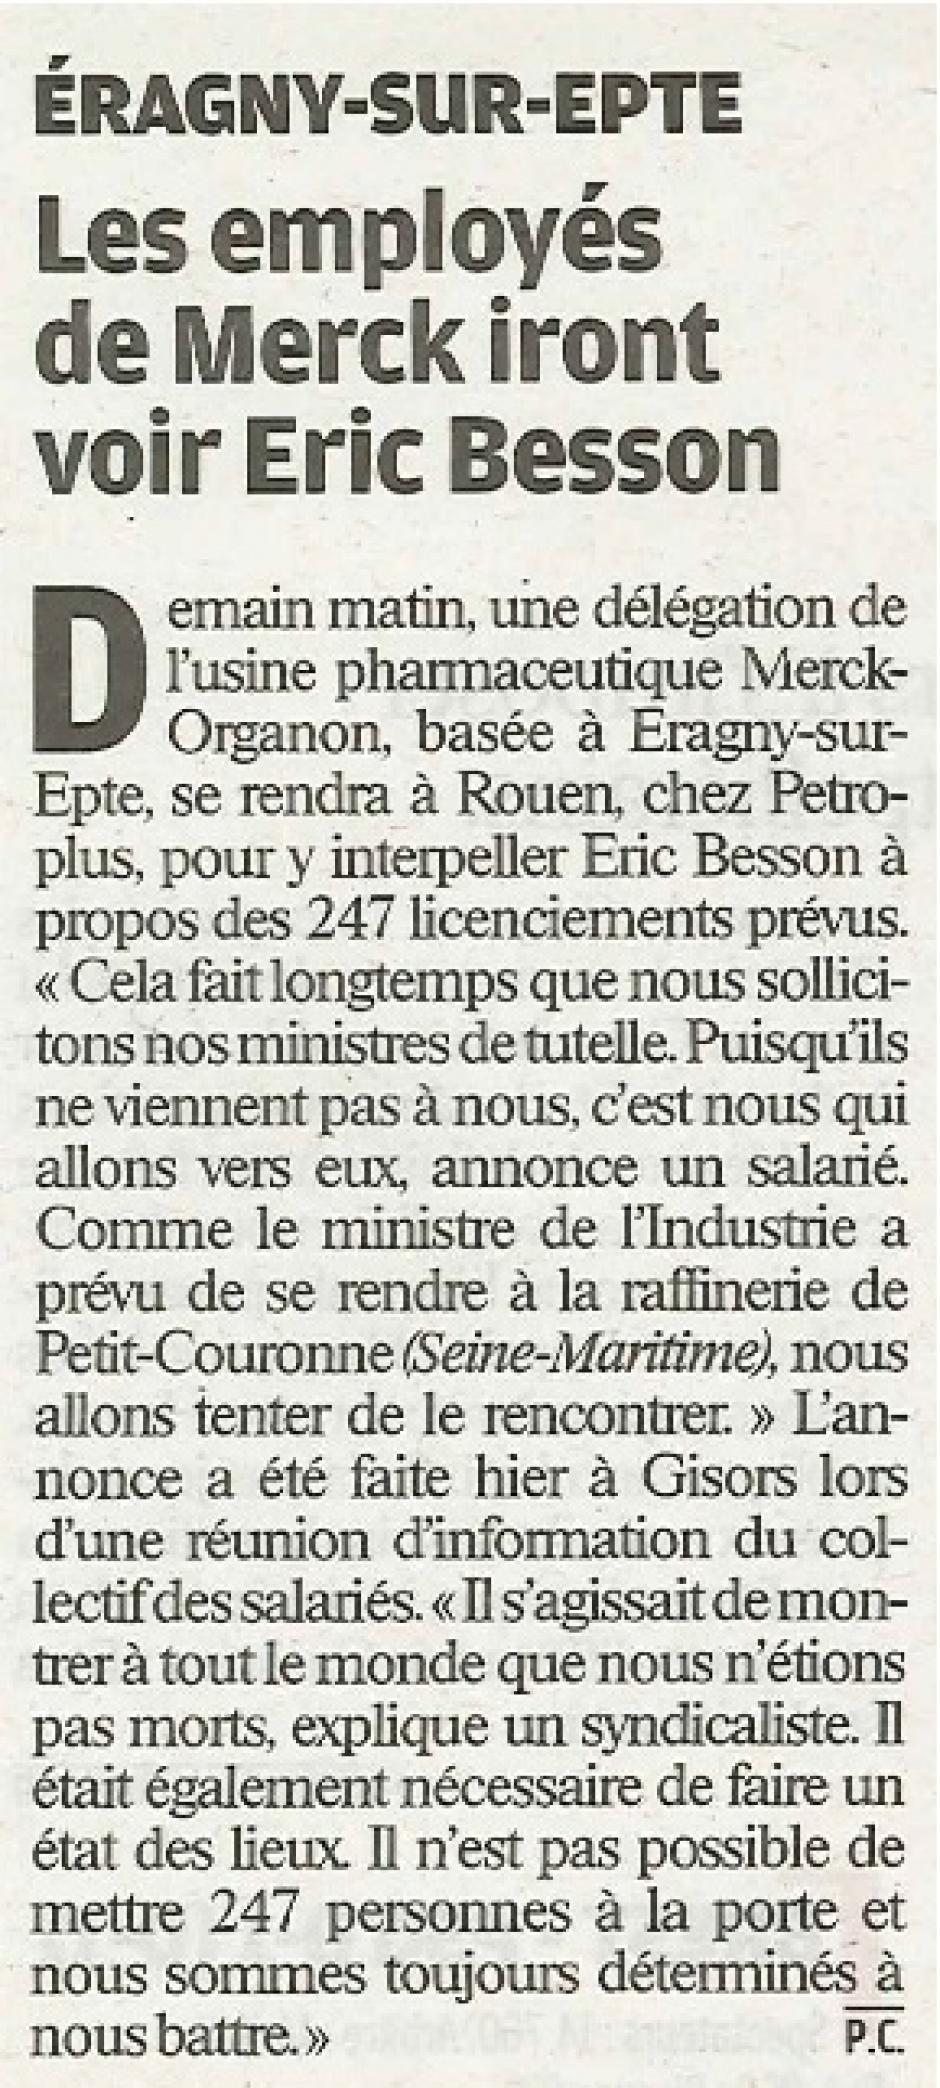 20120129-LeP-Éragny-sur-Epte-Les employés de Merck iront voir Éric Besson